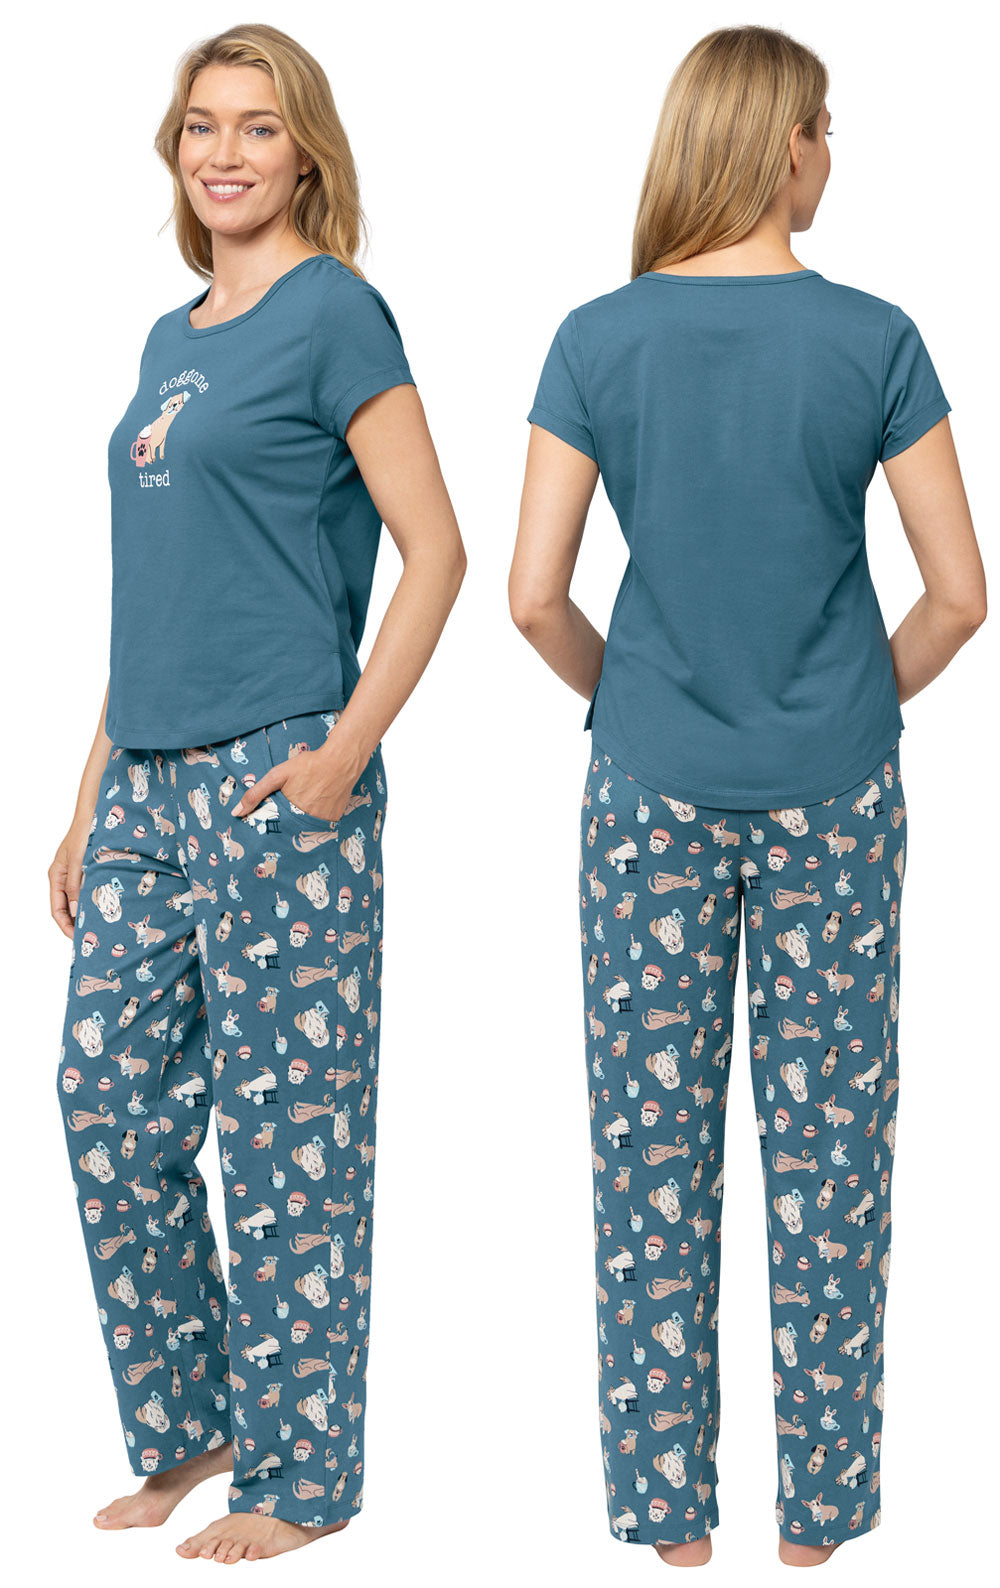 Coffee Dogs Graphic Tee Women's Pajamas